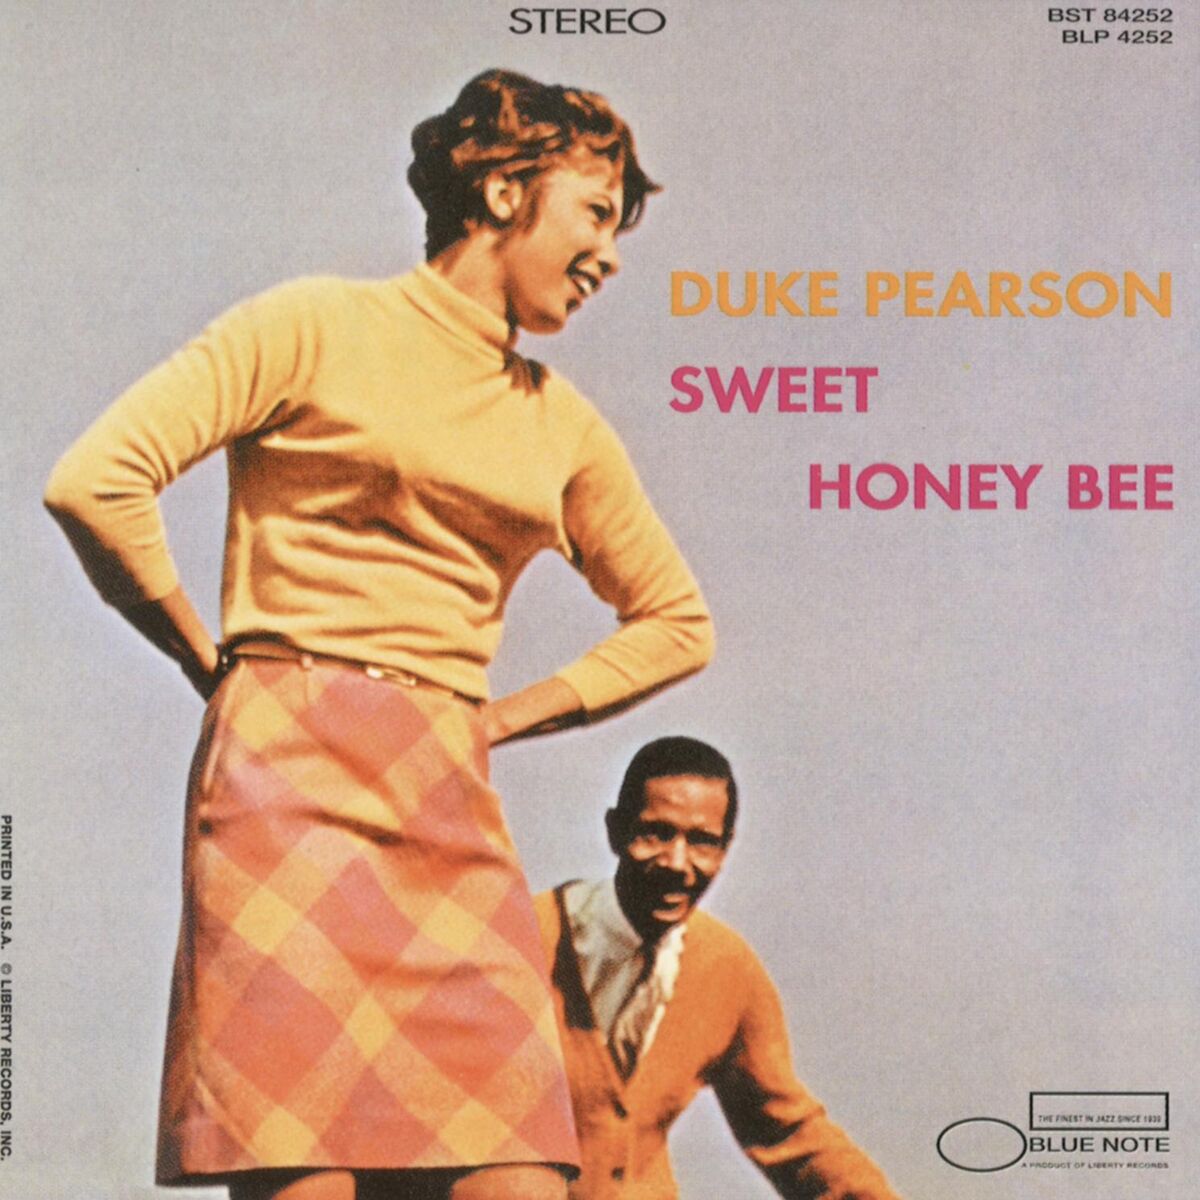 Duke Pearson: albums, songs, playlists | Listen on Deezer